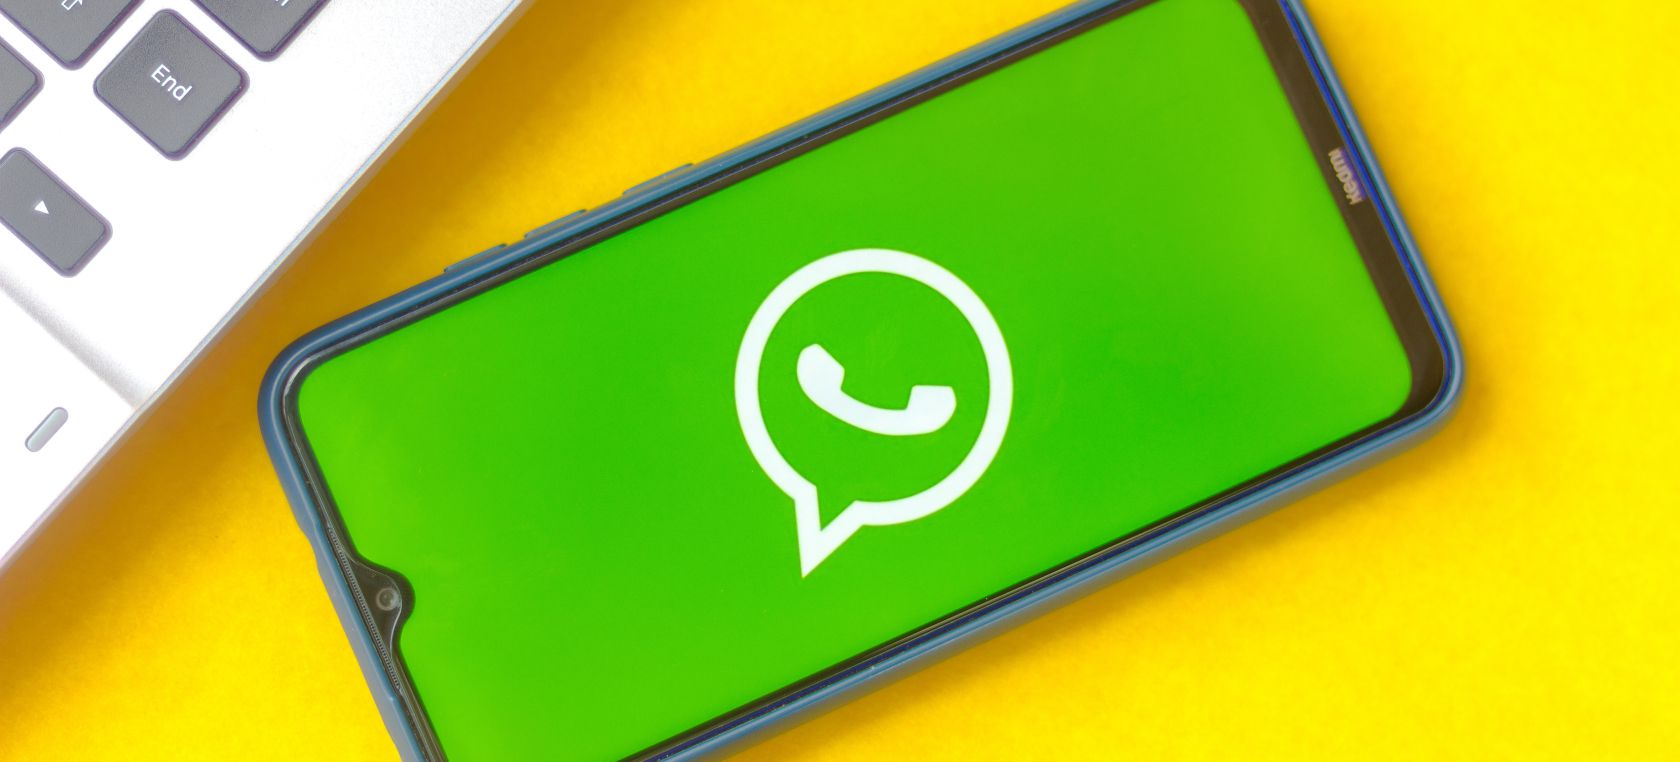 WhatsApp lanza un carrito de la compra con el que no se puede comprar (al menos directamente)